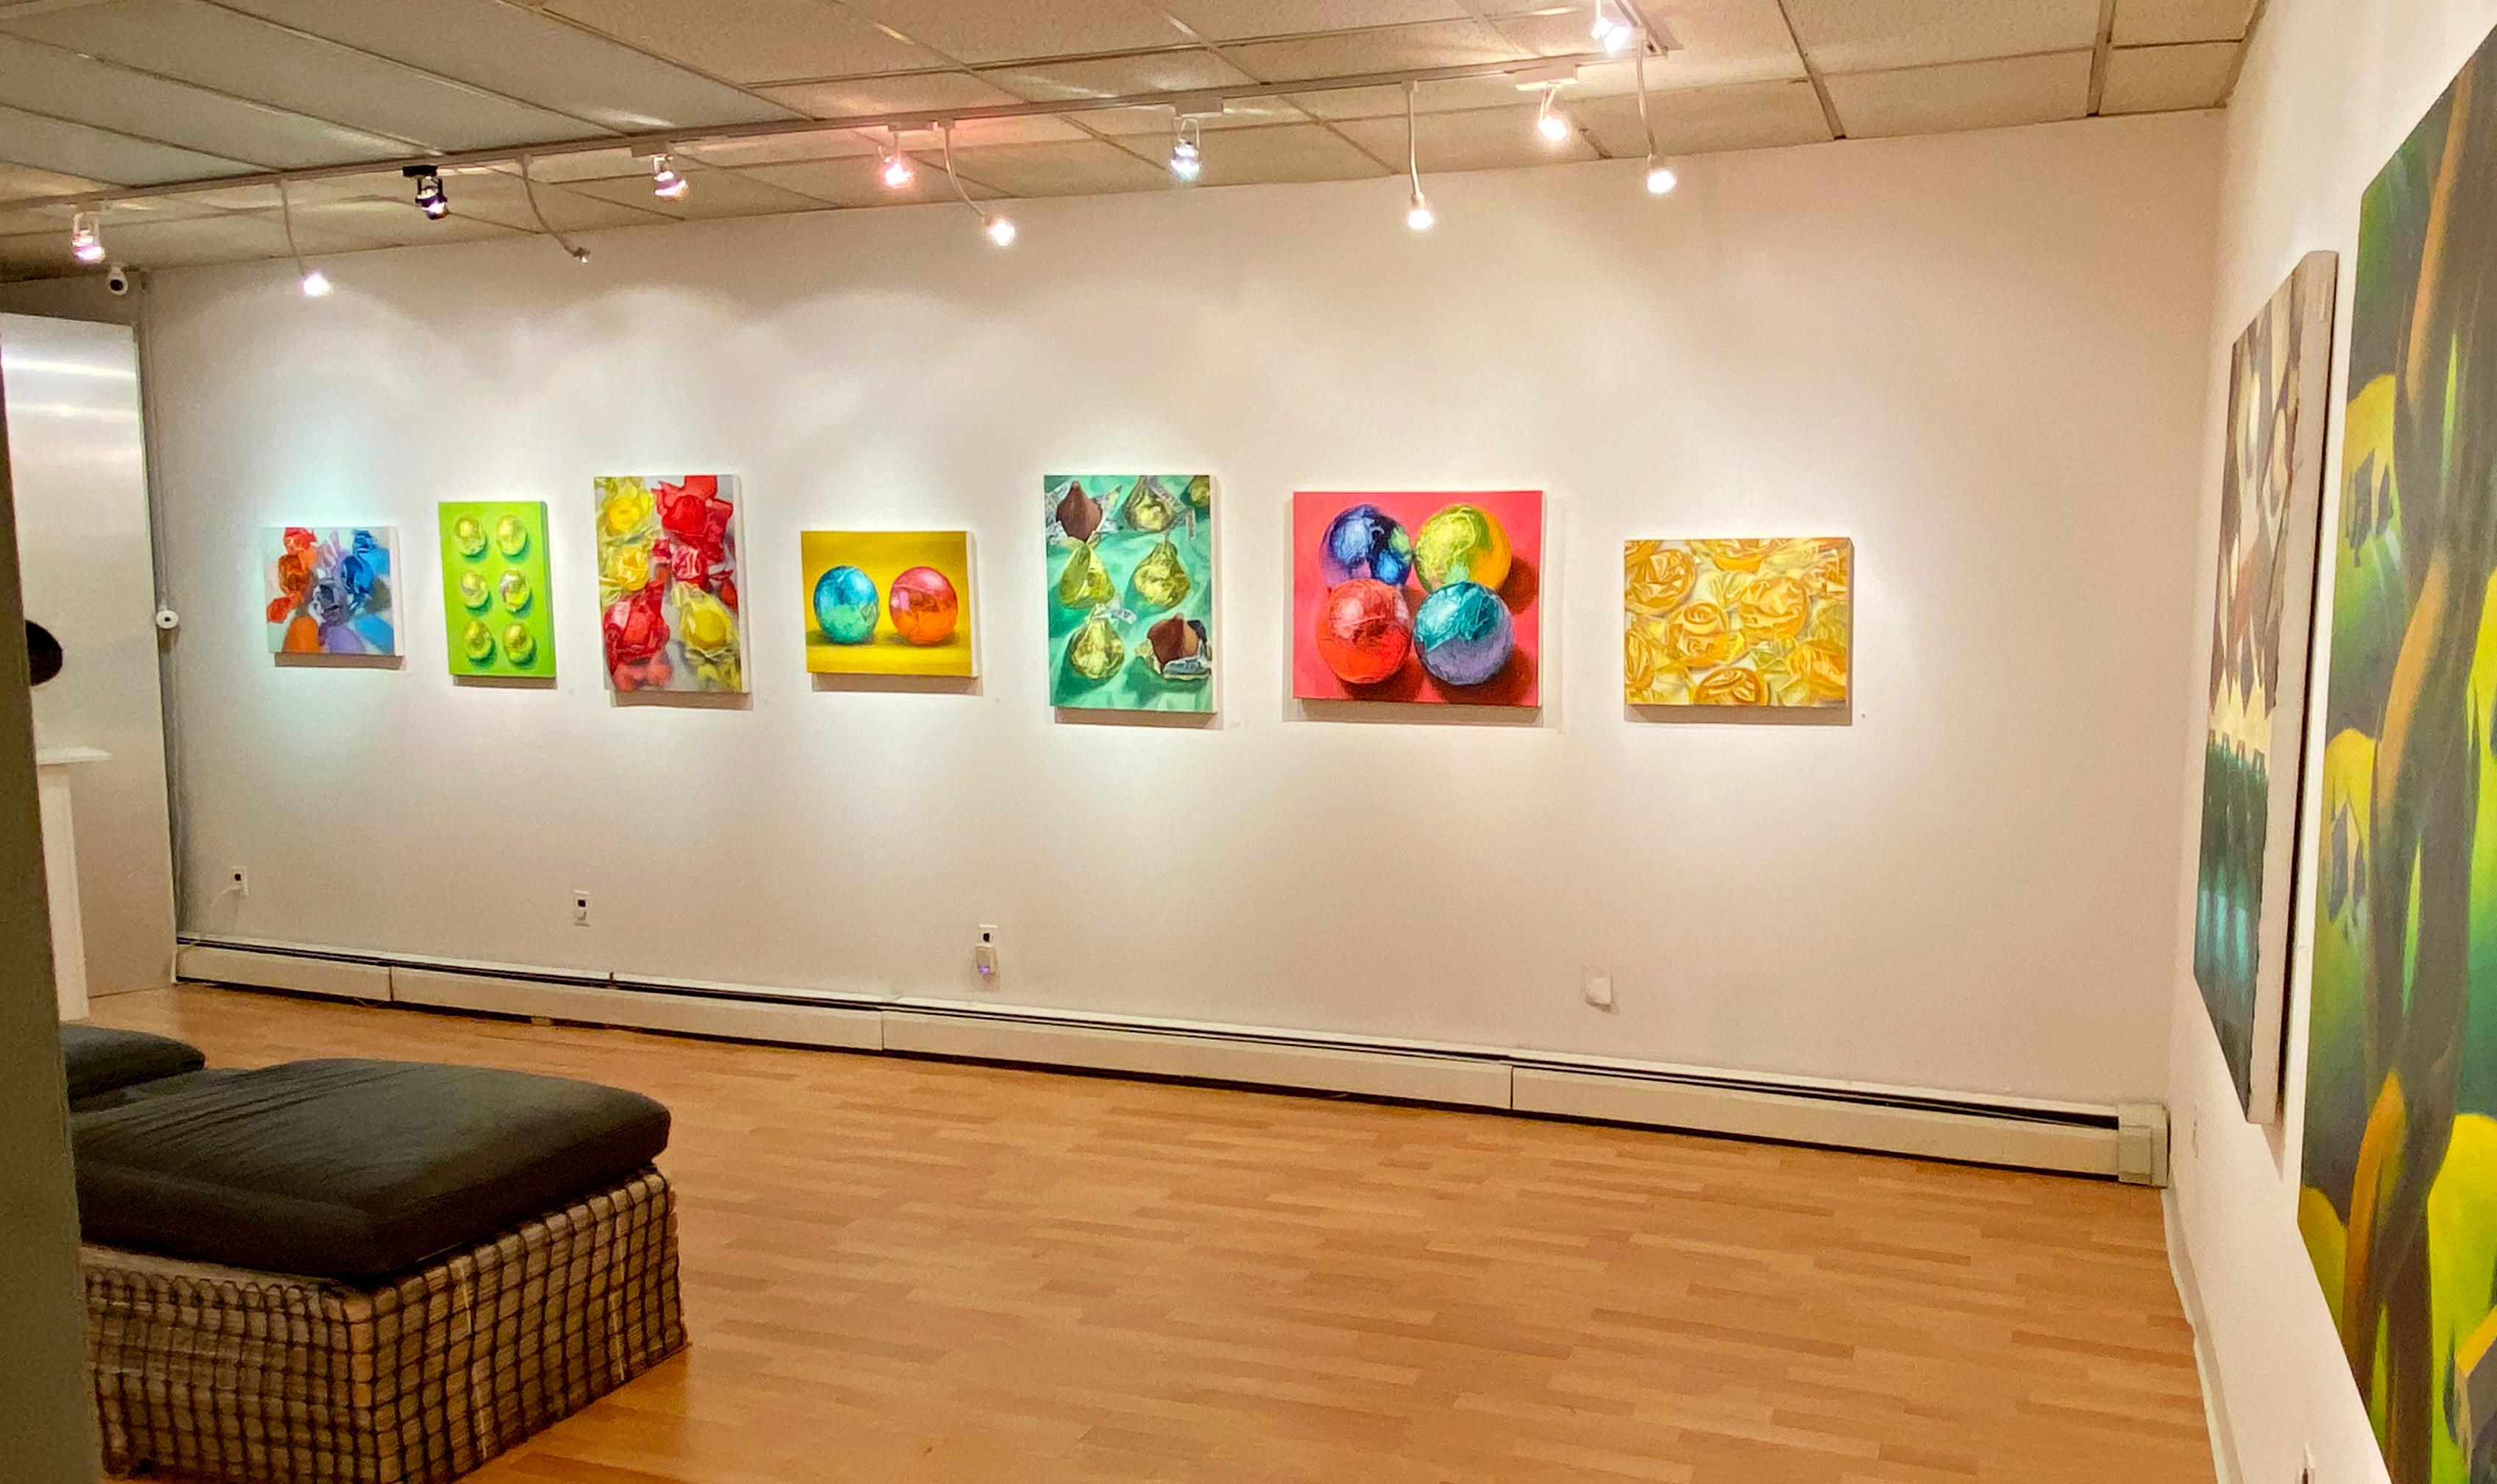 Huile sur toile, couleur vive
Les peintures à l'huile hyperréalistes de Doug Newton observent la réalité, explorent la translucidité, les reflets et la luminosité, et éblouissent le spectateur avec toutes les façons dont la lumière peut transformer